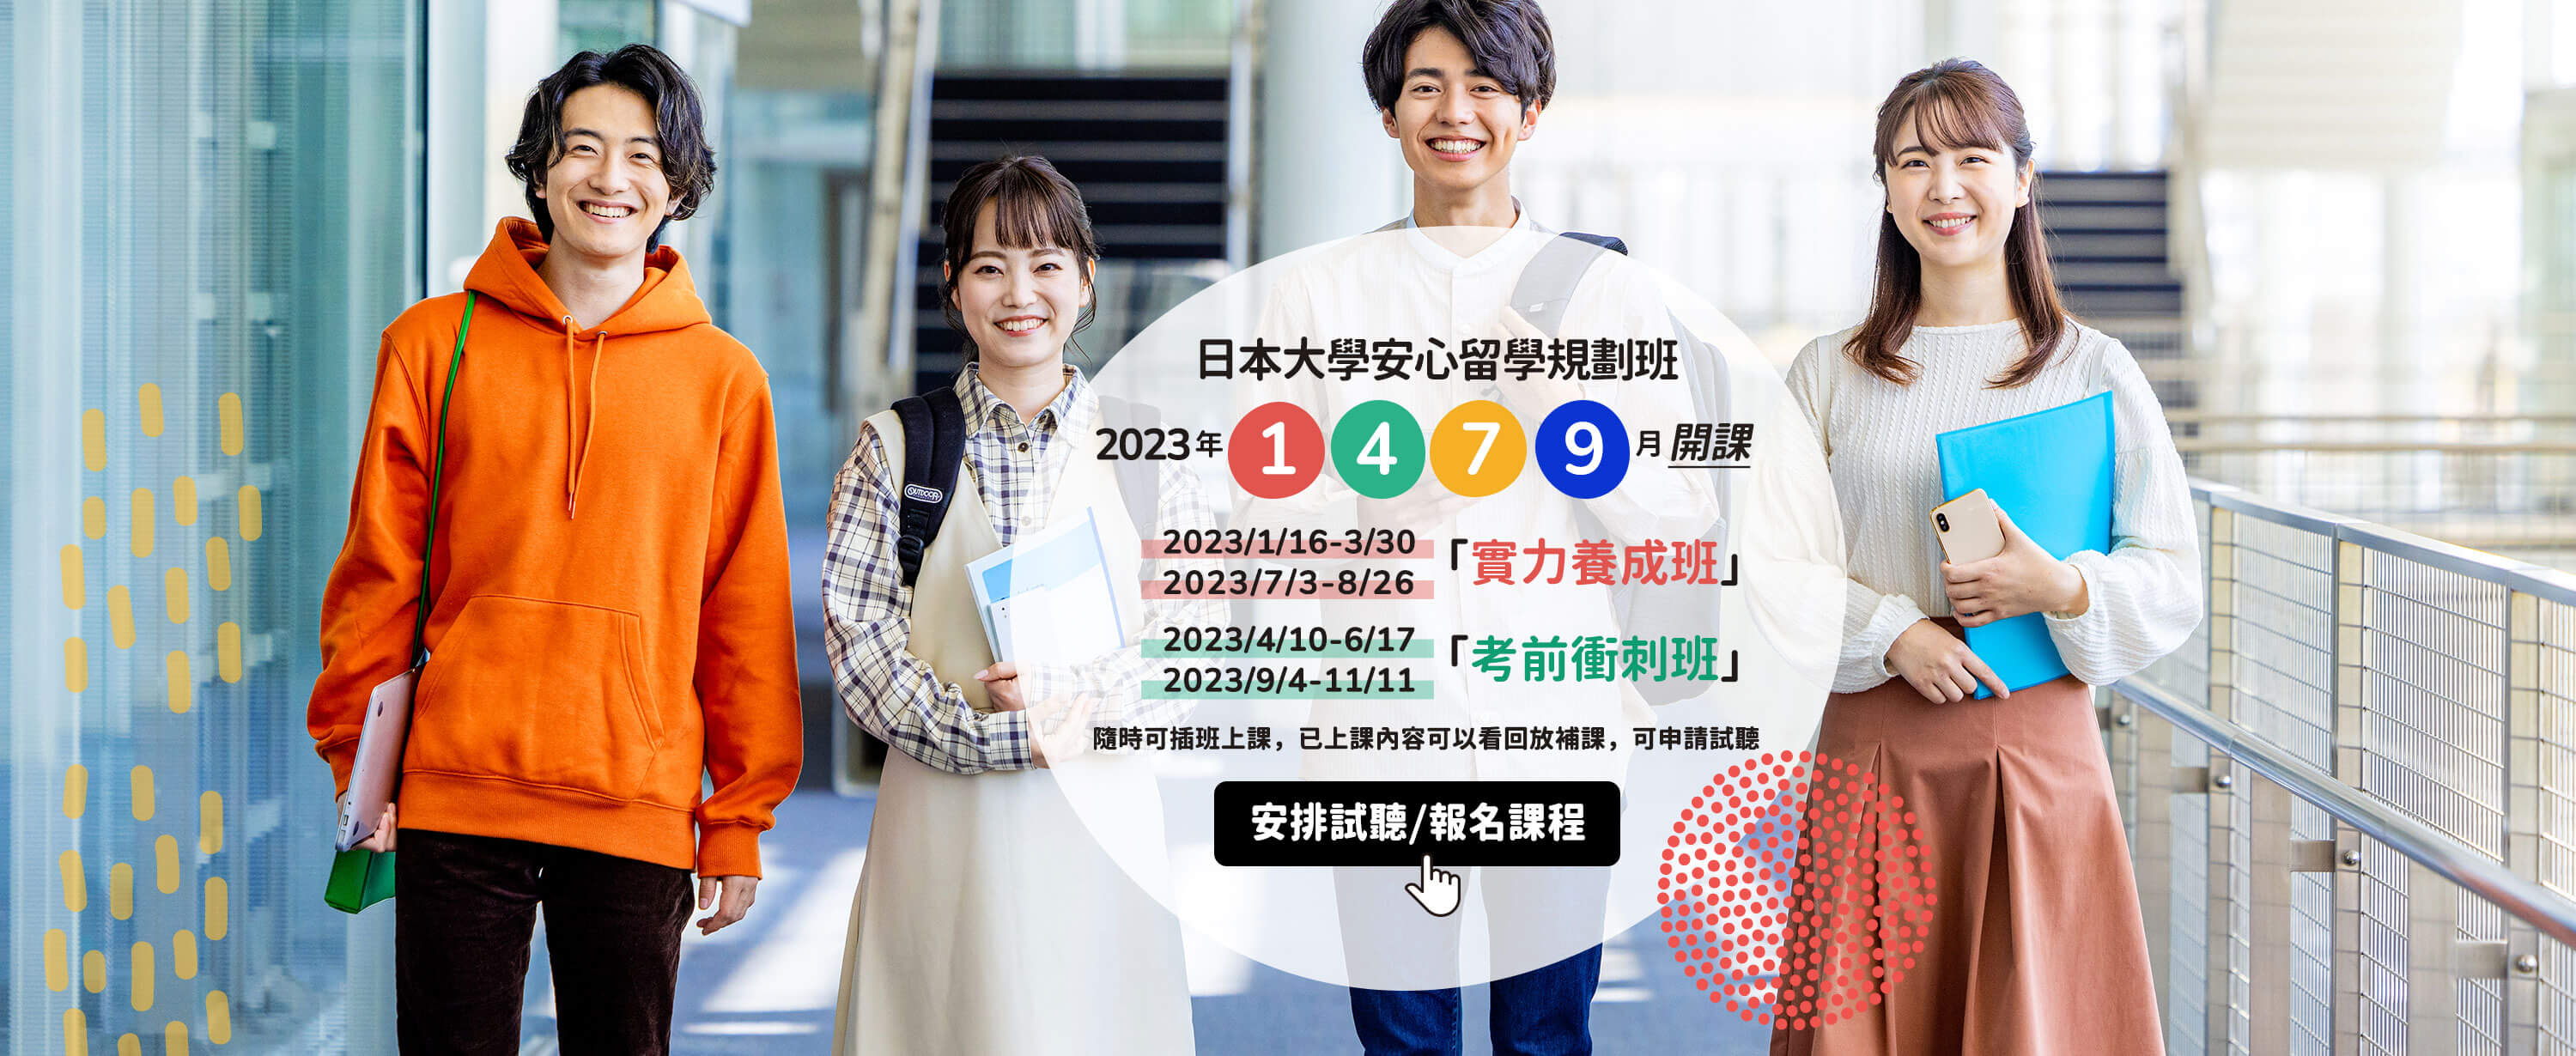 日本大學安心留學規劃班